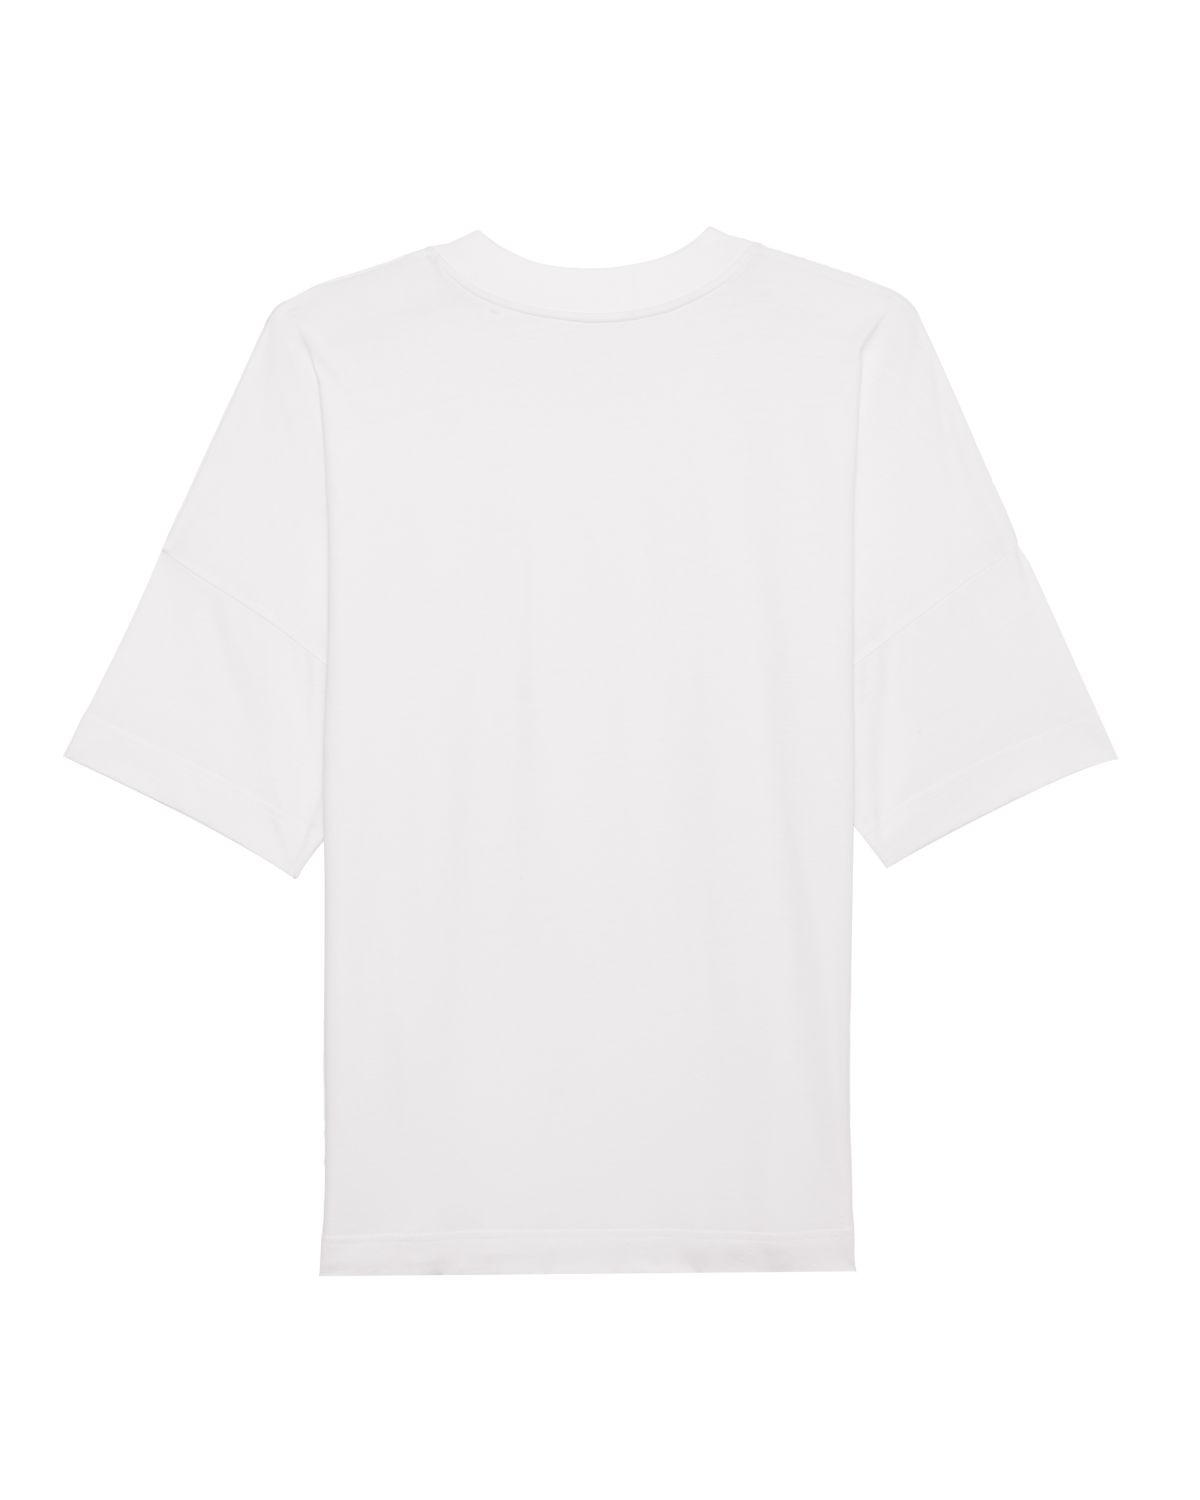 Organic Oversize T-Shirt Schön Stick | unisex | Weiß - Studio Schön®